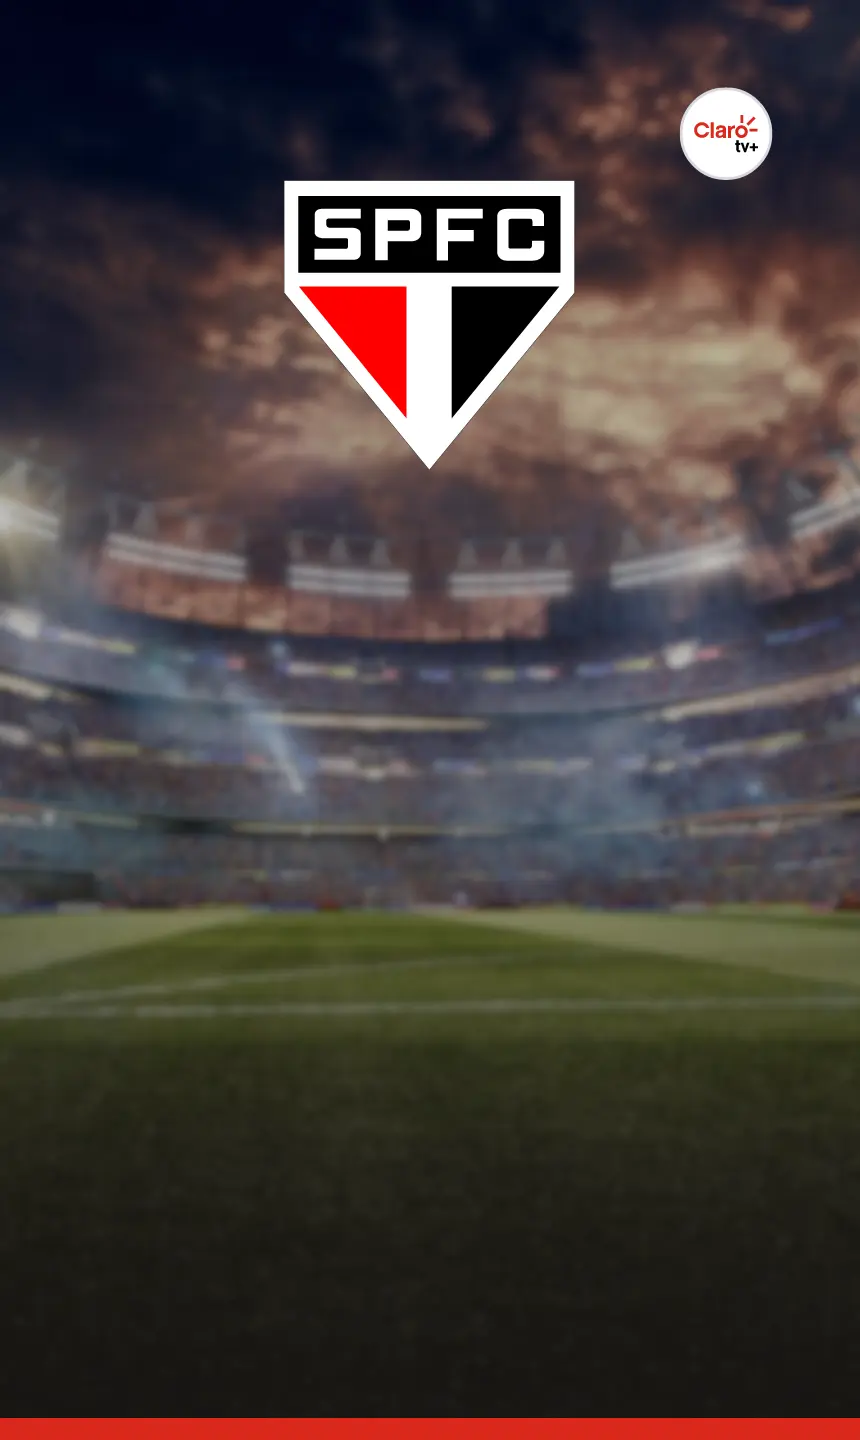 PROXIMOS JOGOS AO VIVO :: Assistir Futebol ao vivo Gratis online